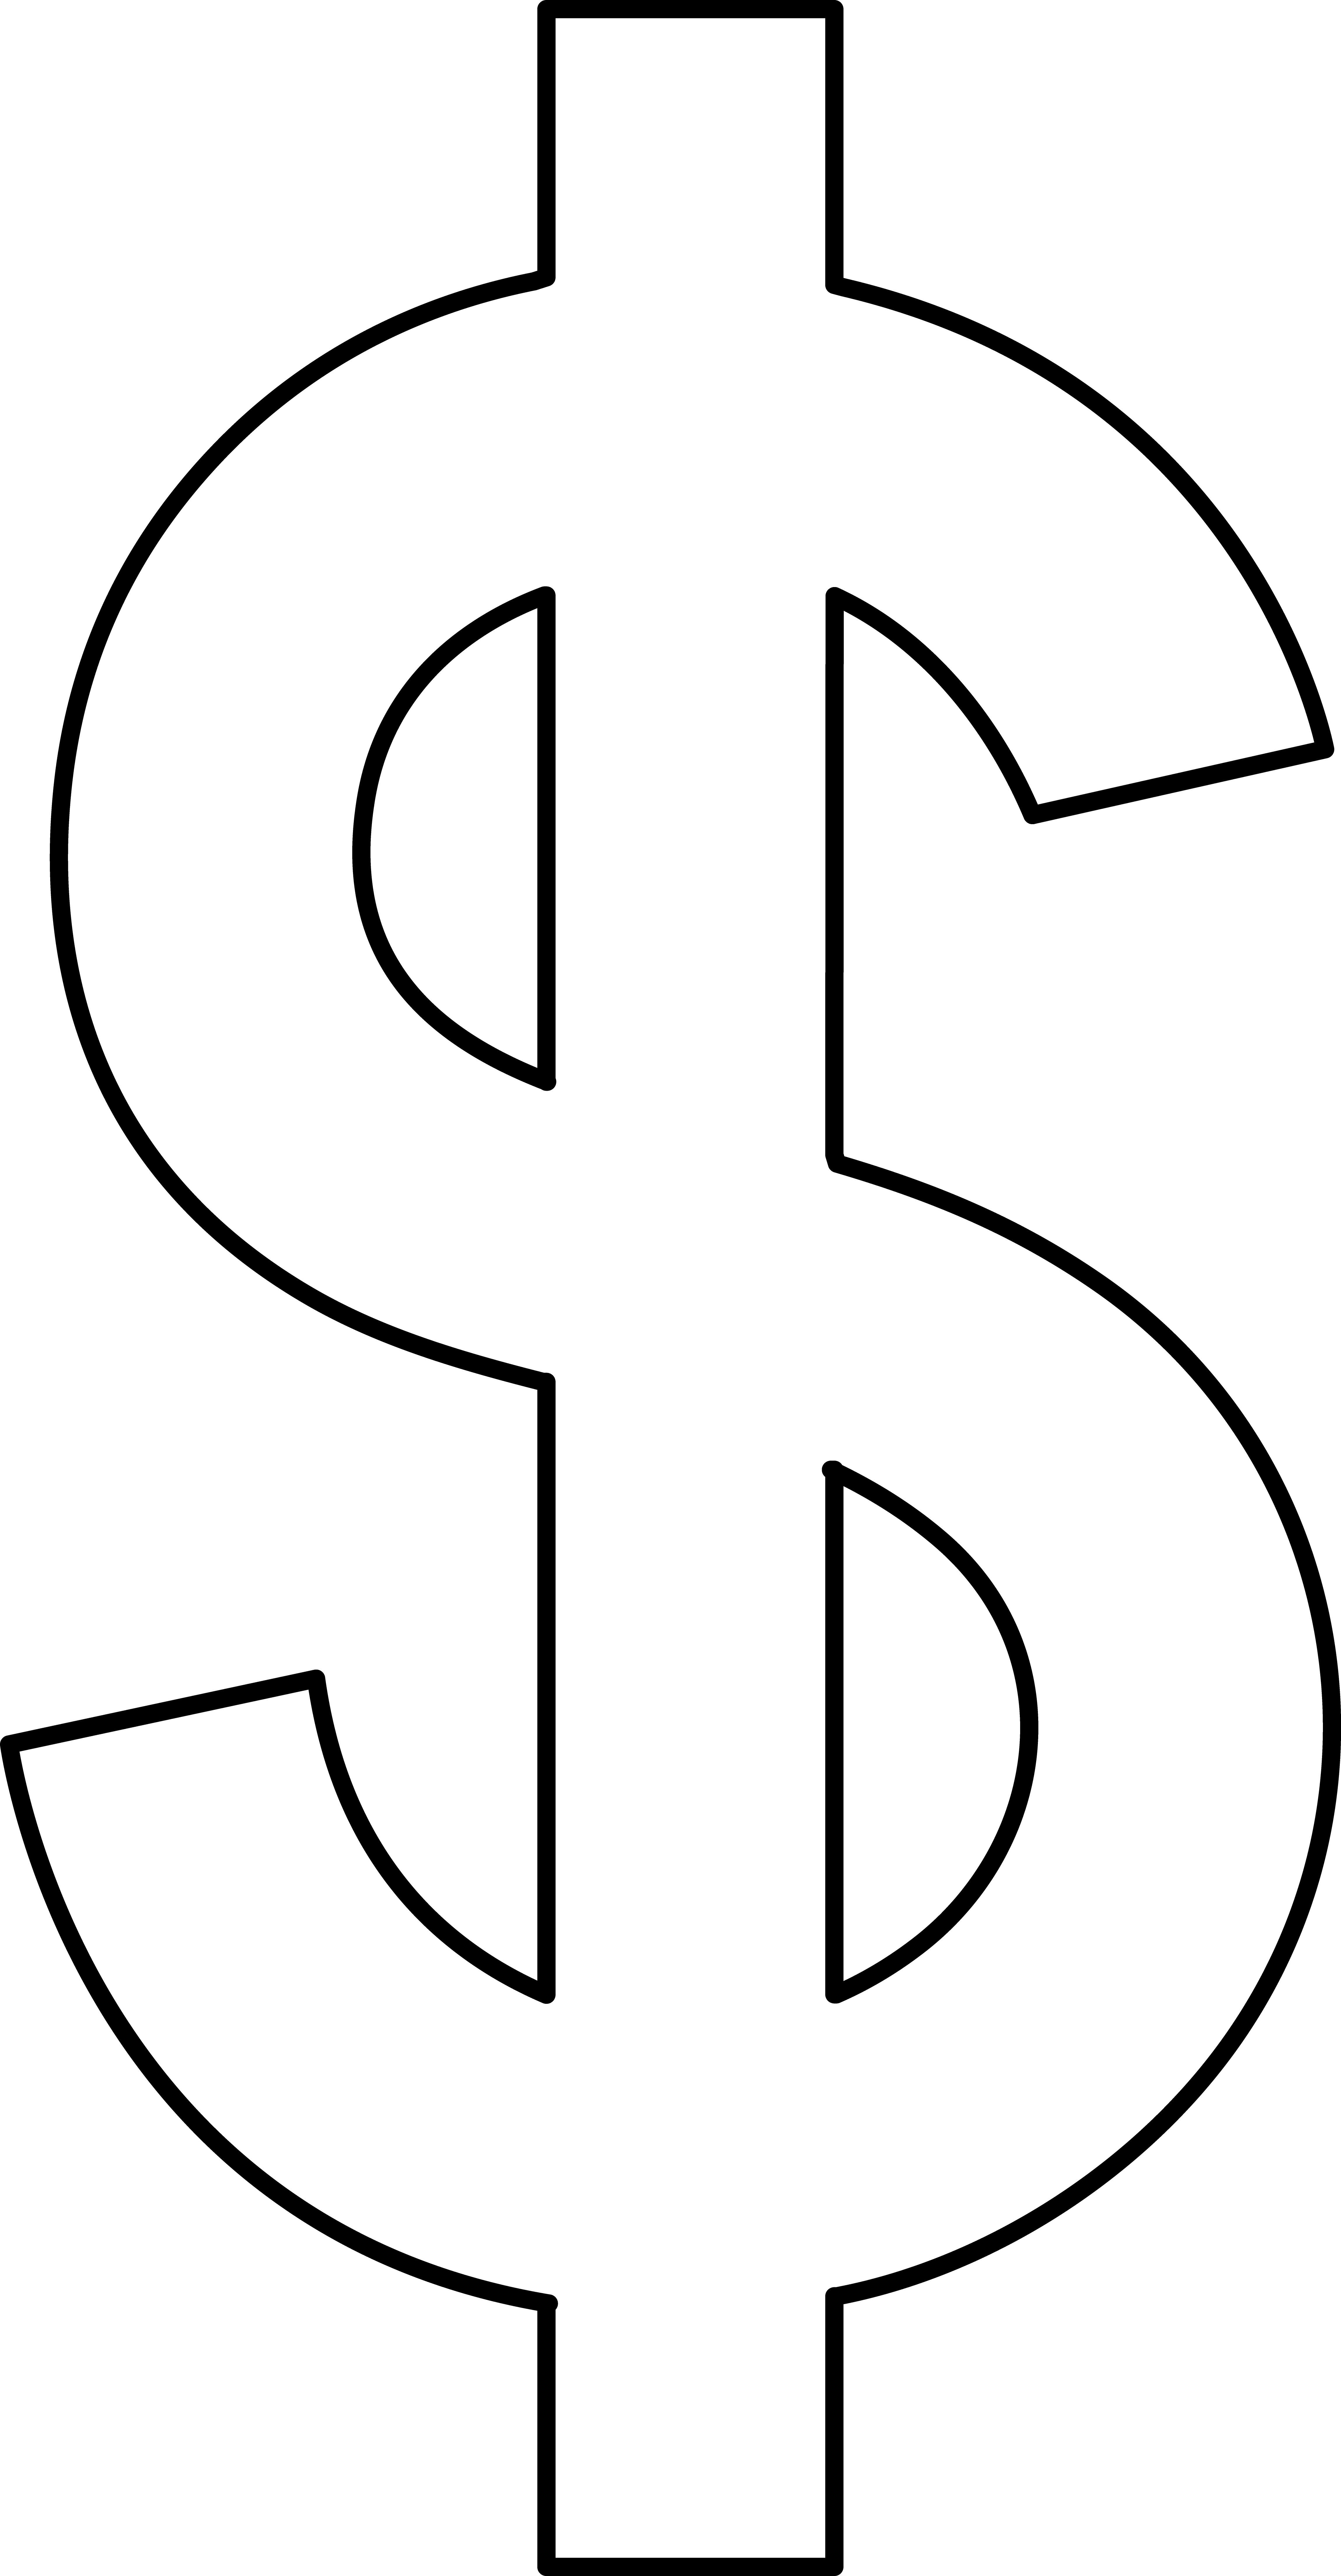 Money Symbol Images  Cliparts.co